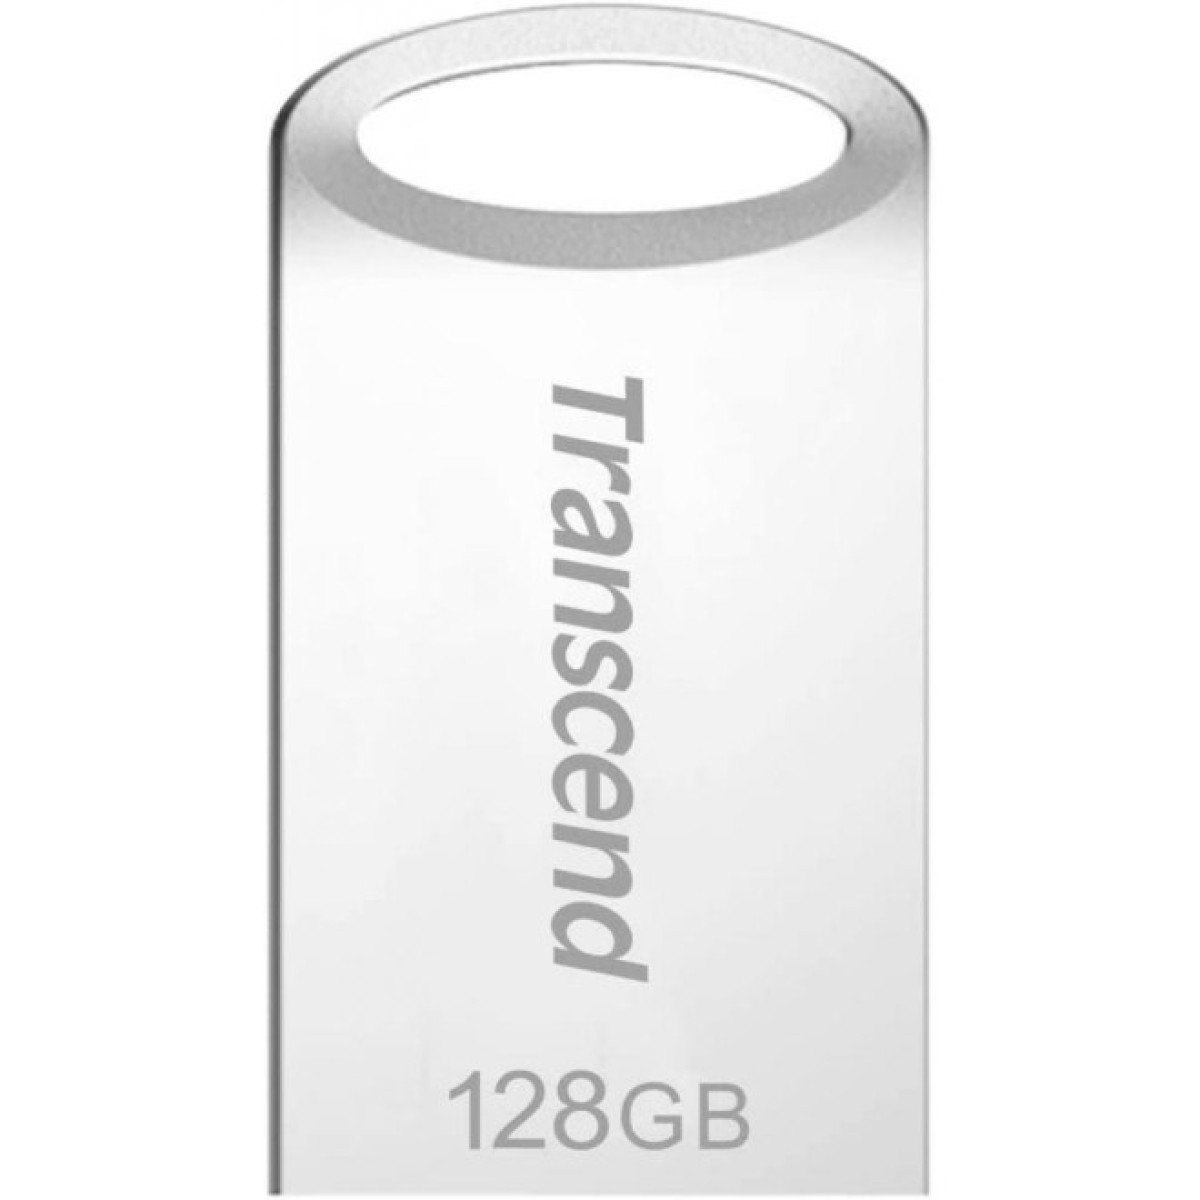 USB флеш накопитель Transcend 128GB JetFlash 710 Silver USB 3.0 (TS128GJF710S) 256_256.jpg